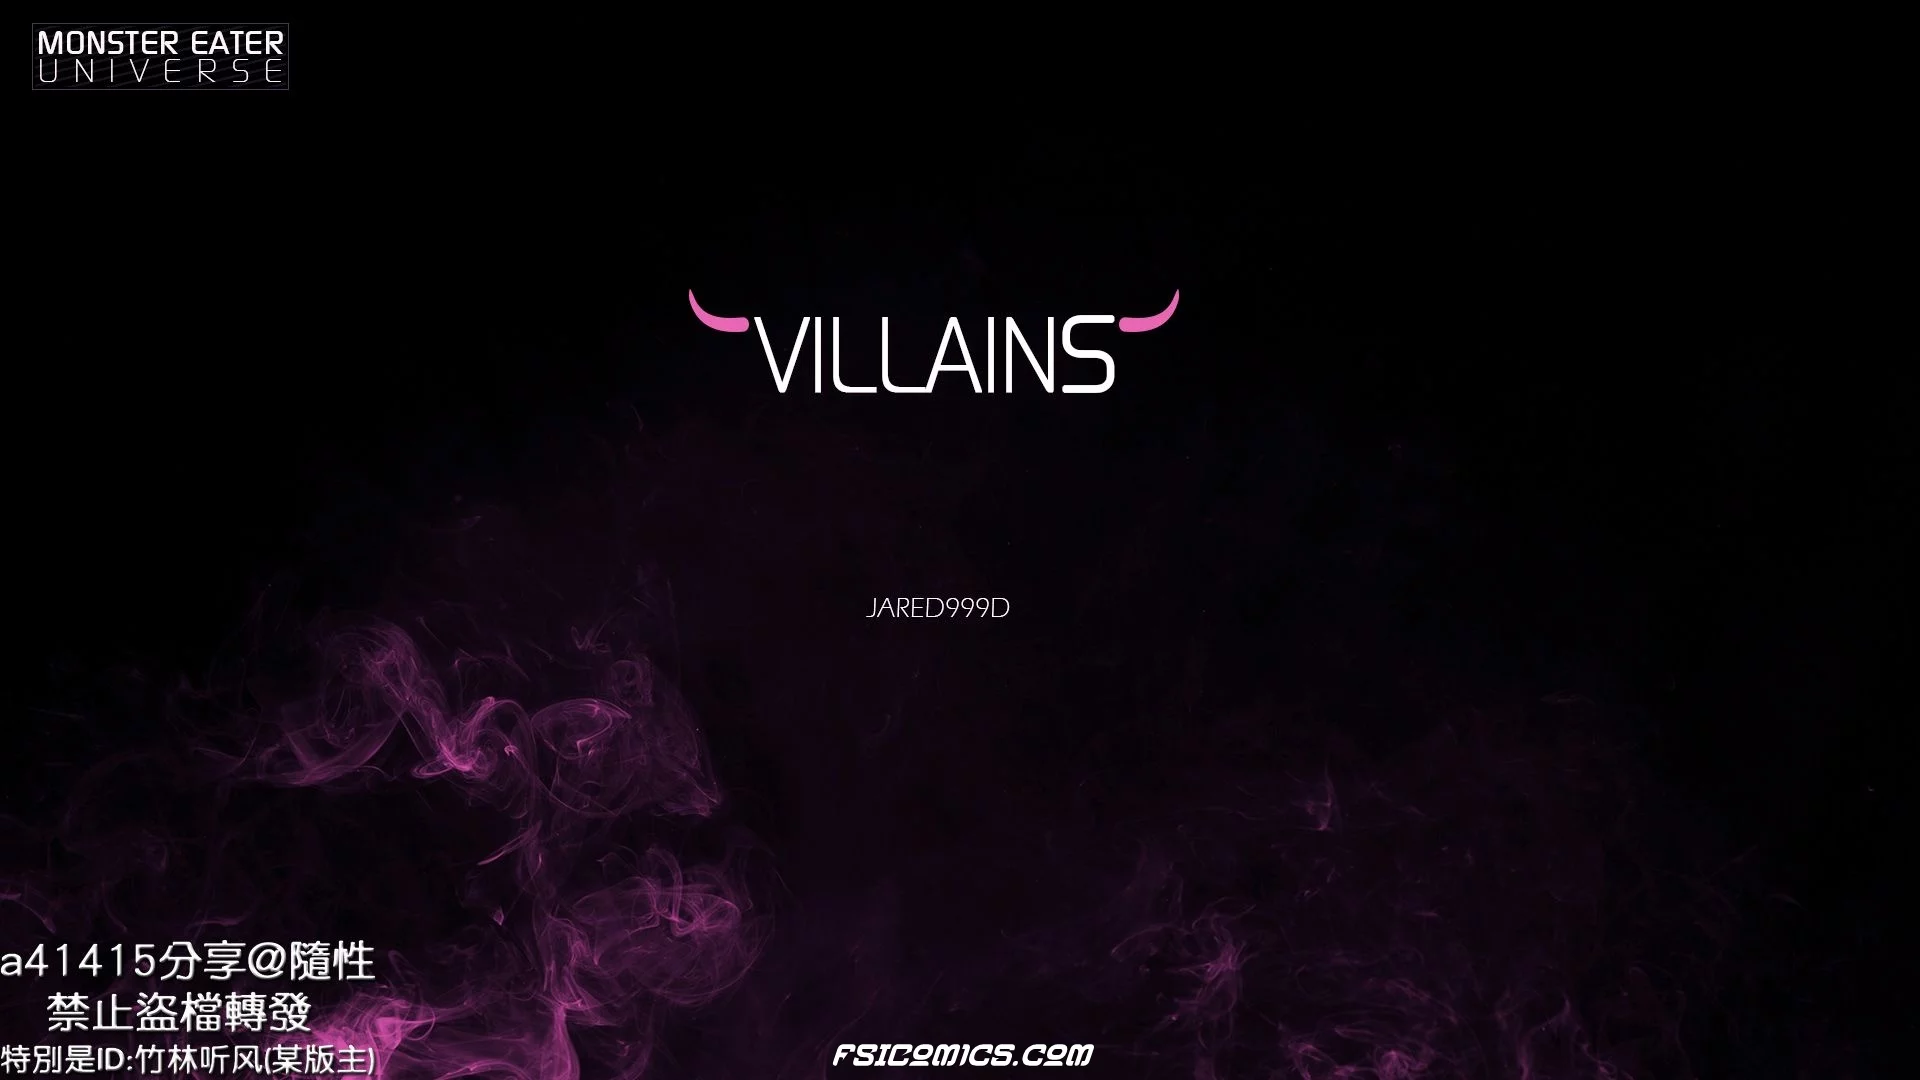 Villains Chapter 1 -Jared999D - 7 - FSIComics